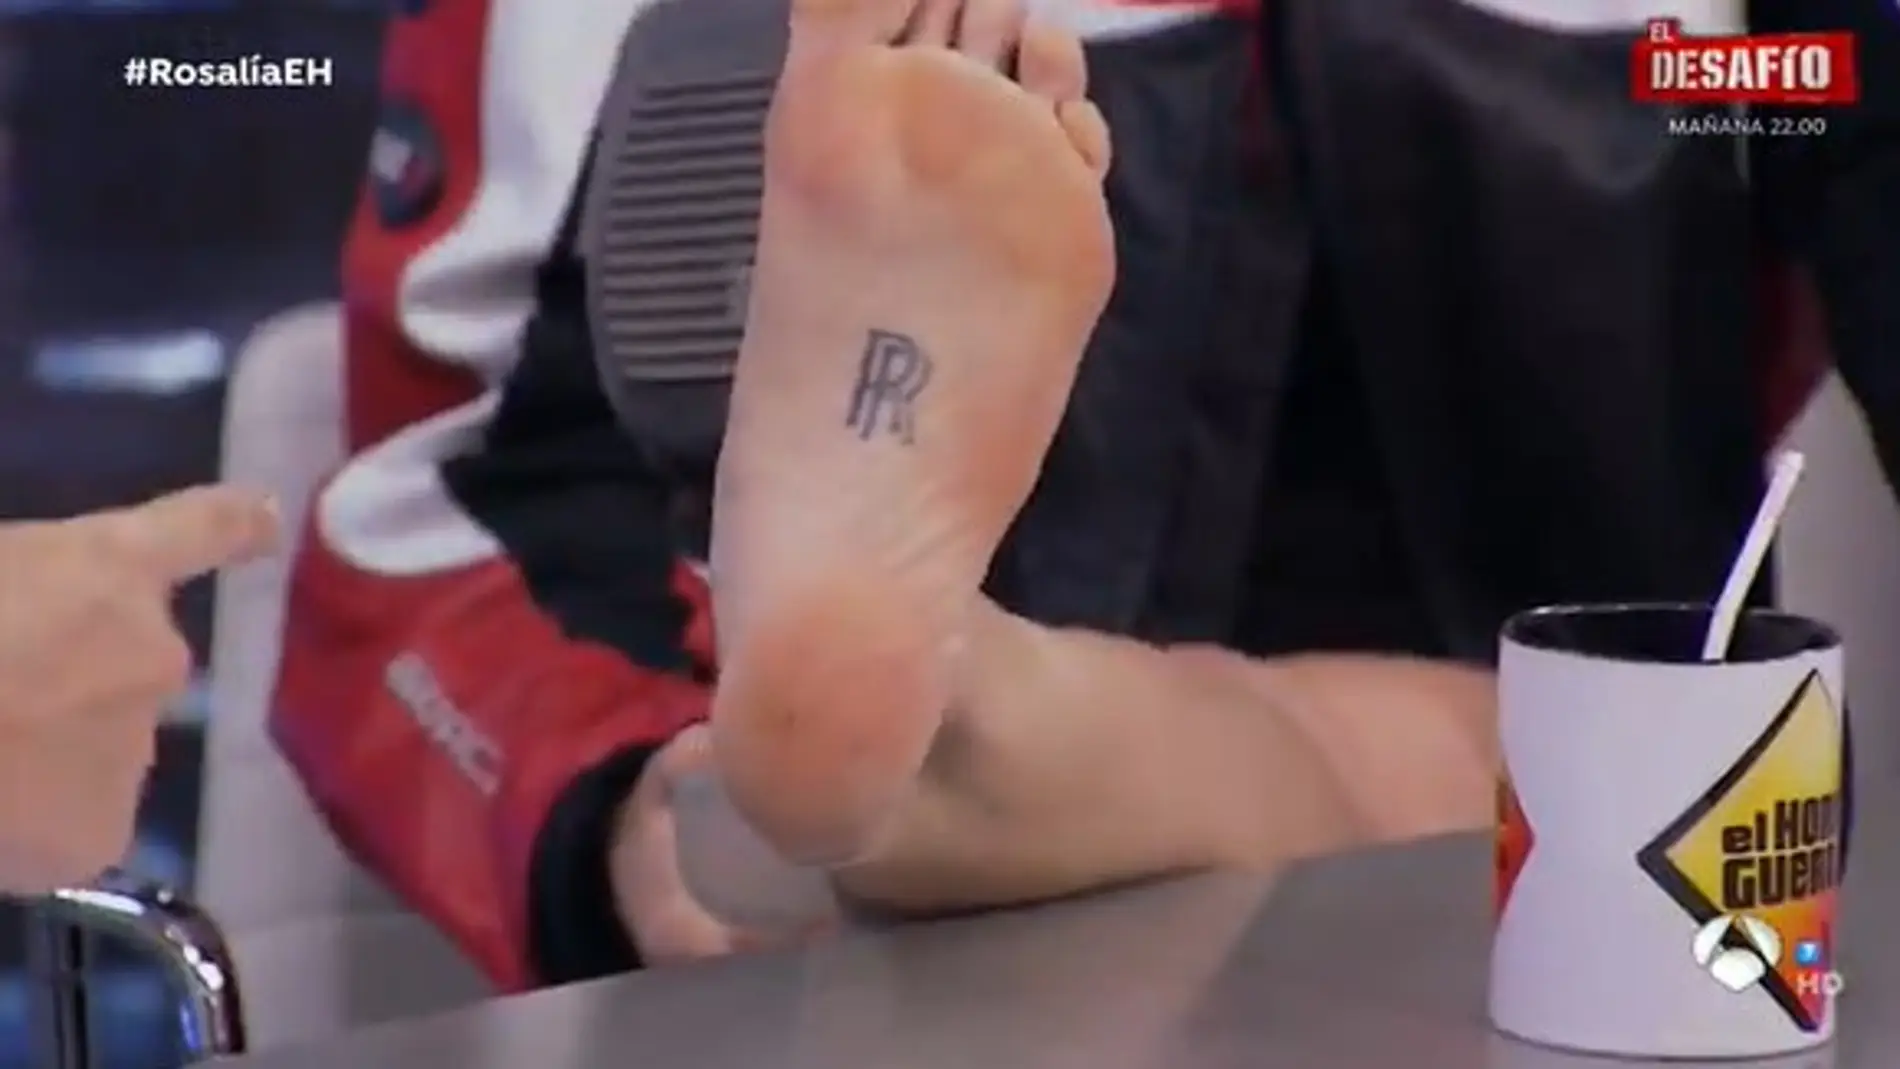 El tatuaje en la planta del pie de Rosalía